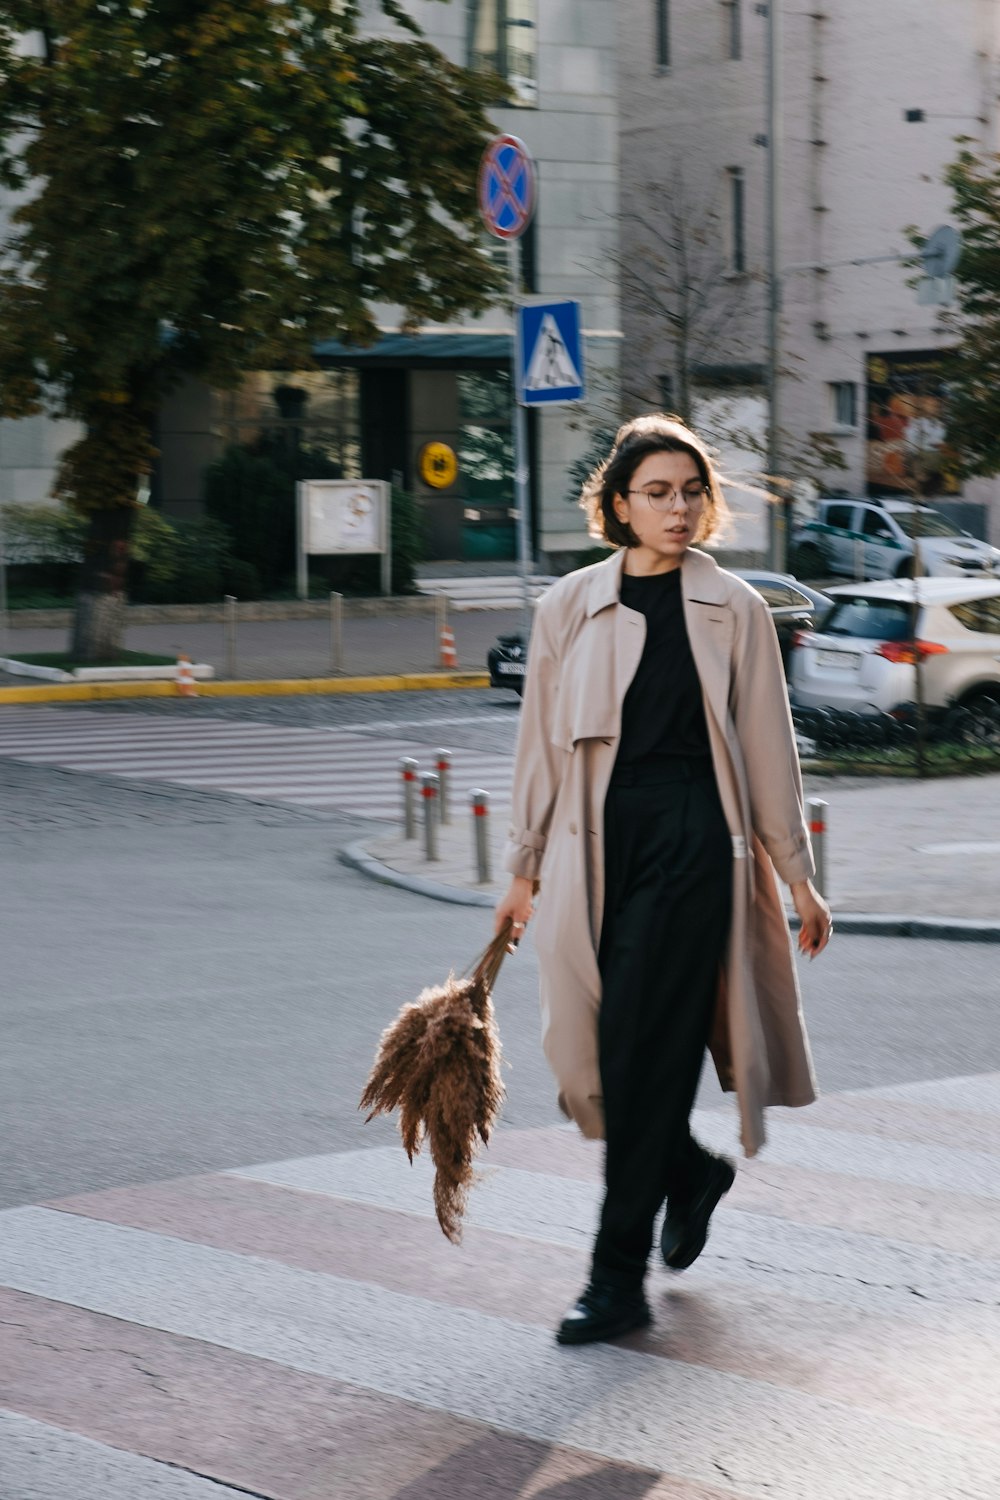 mulher no casaco marrom que segura a vassoura marrom em pé na calçada durante o dia